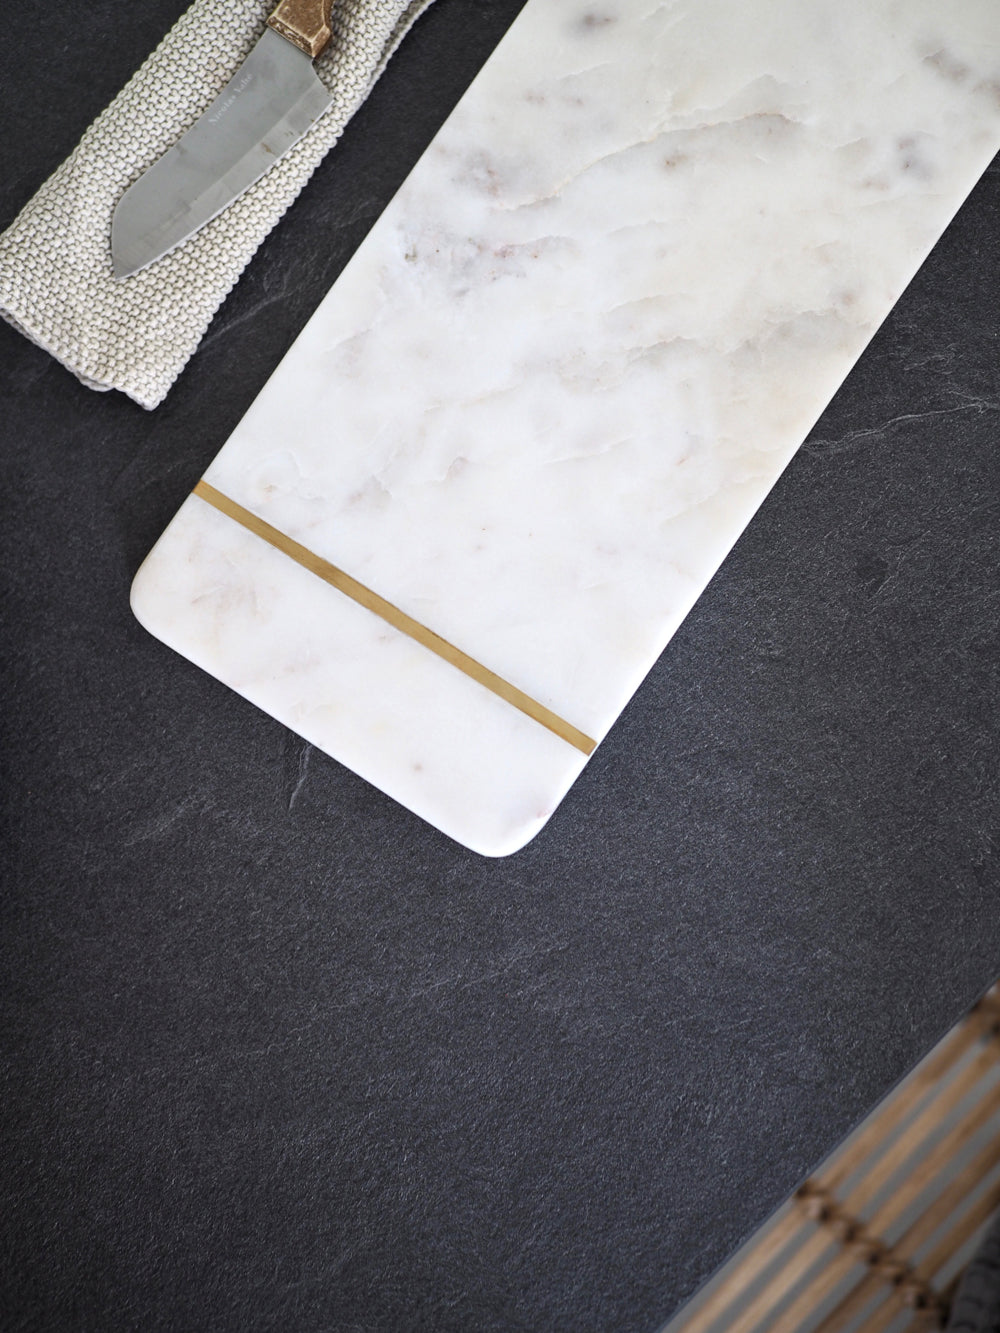 Load billede i Galleri Viewer, Hvid marmor serveringsbræt - skærebræt
